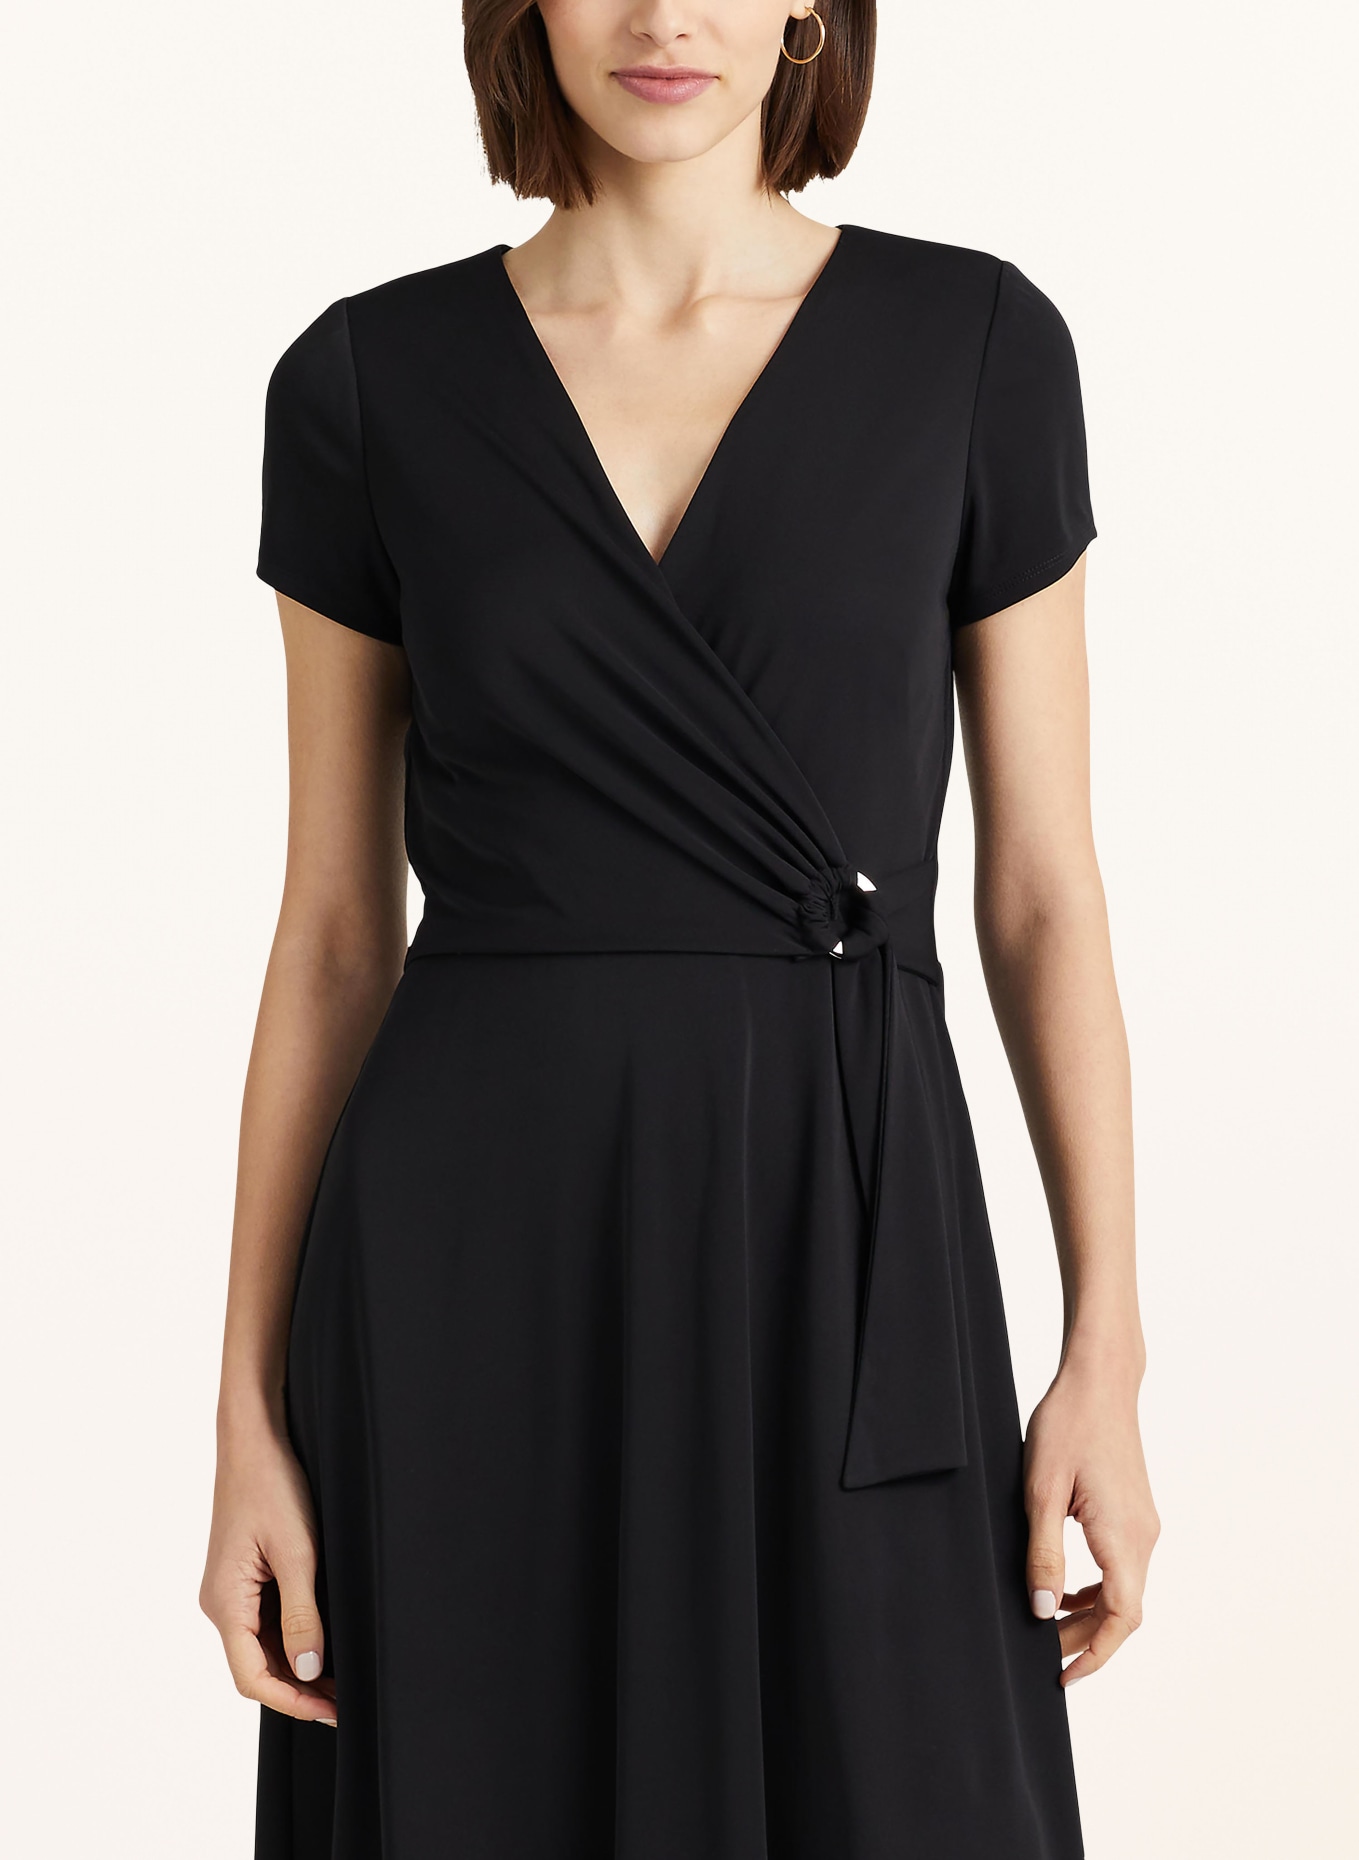 LAUREN RALPH LAUREN Jersey dress in wrap look, Color: BLACK (Image 4)